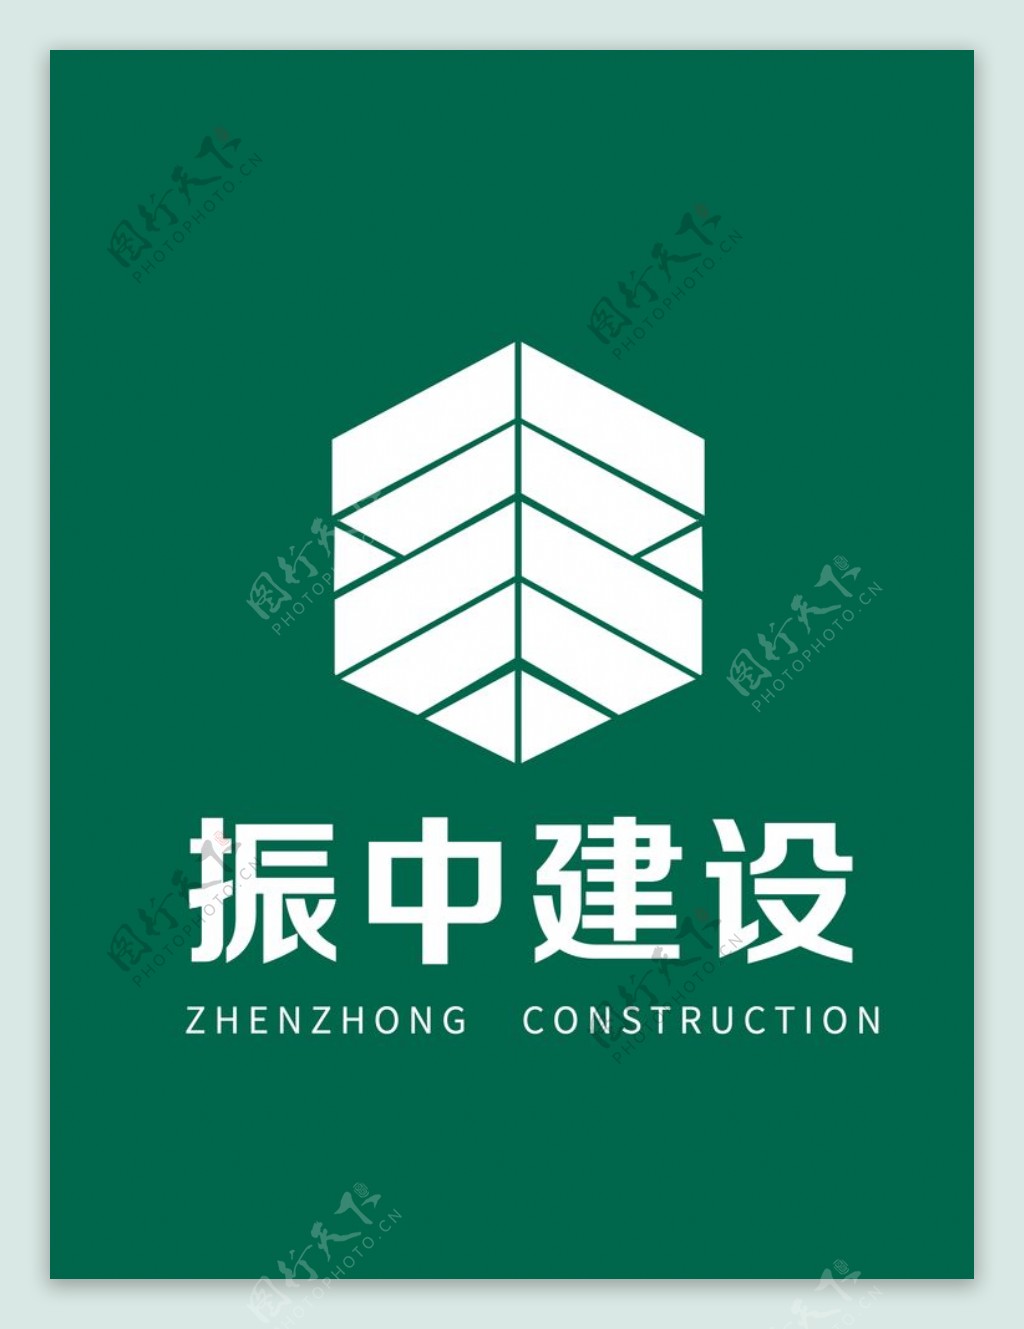 振中建设logo